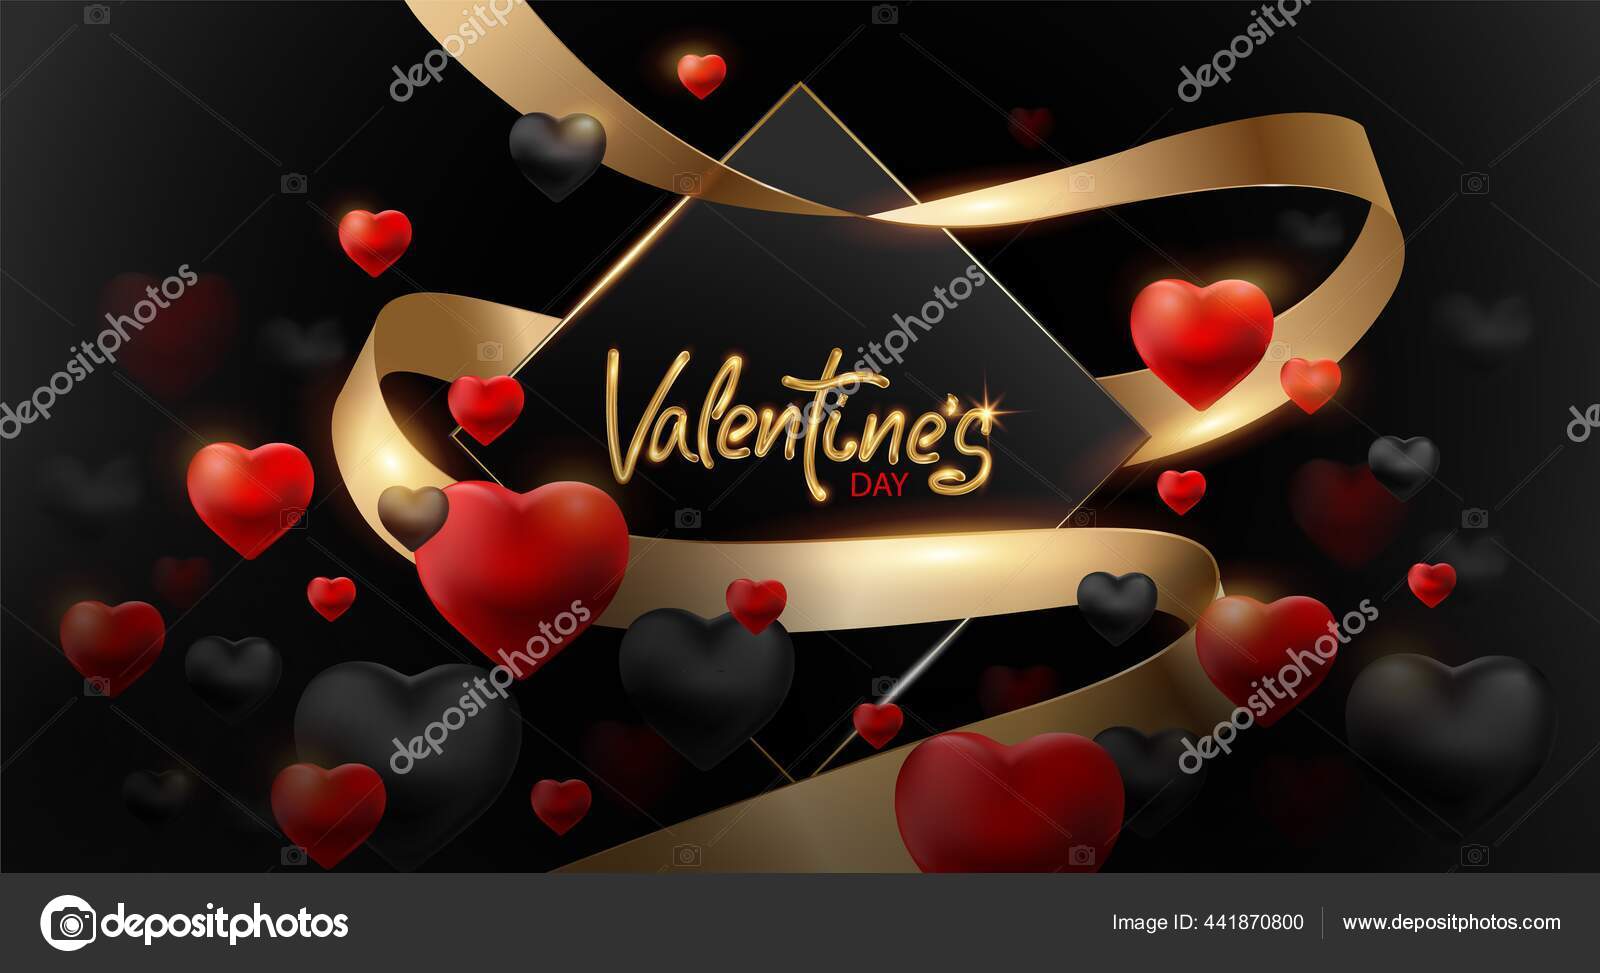 Hình nền ngày Valentine đen và đỏ sẽ là điểm nhấn hoàn hảo cho bất kỳ ai yêu thích sự lãng mạn và mạnh mẽ. Những cánh hoa đỏ rực trên nền đen tạo nên một không gian lãng mạn và đầy cảm xúc cho ngày trọng đại này.